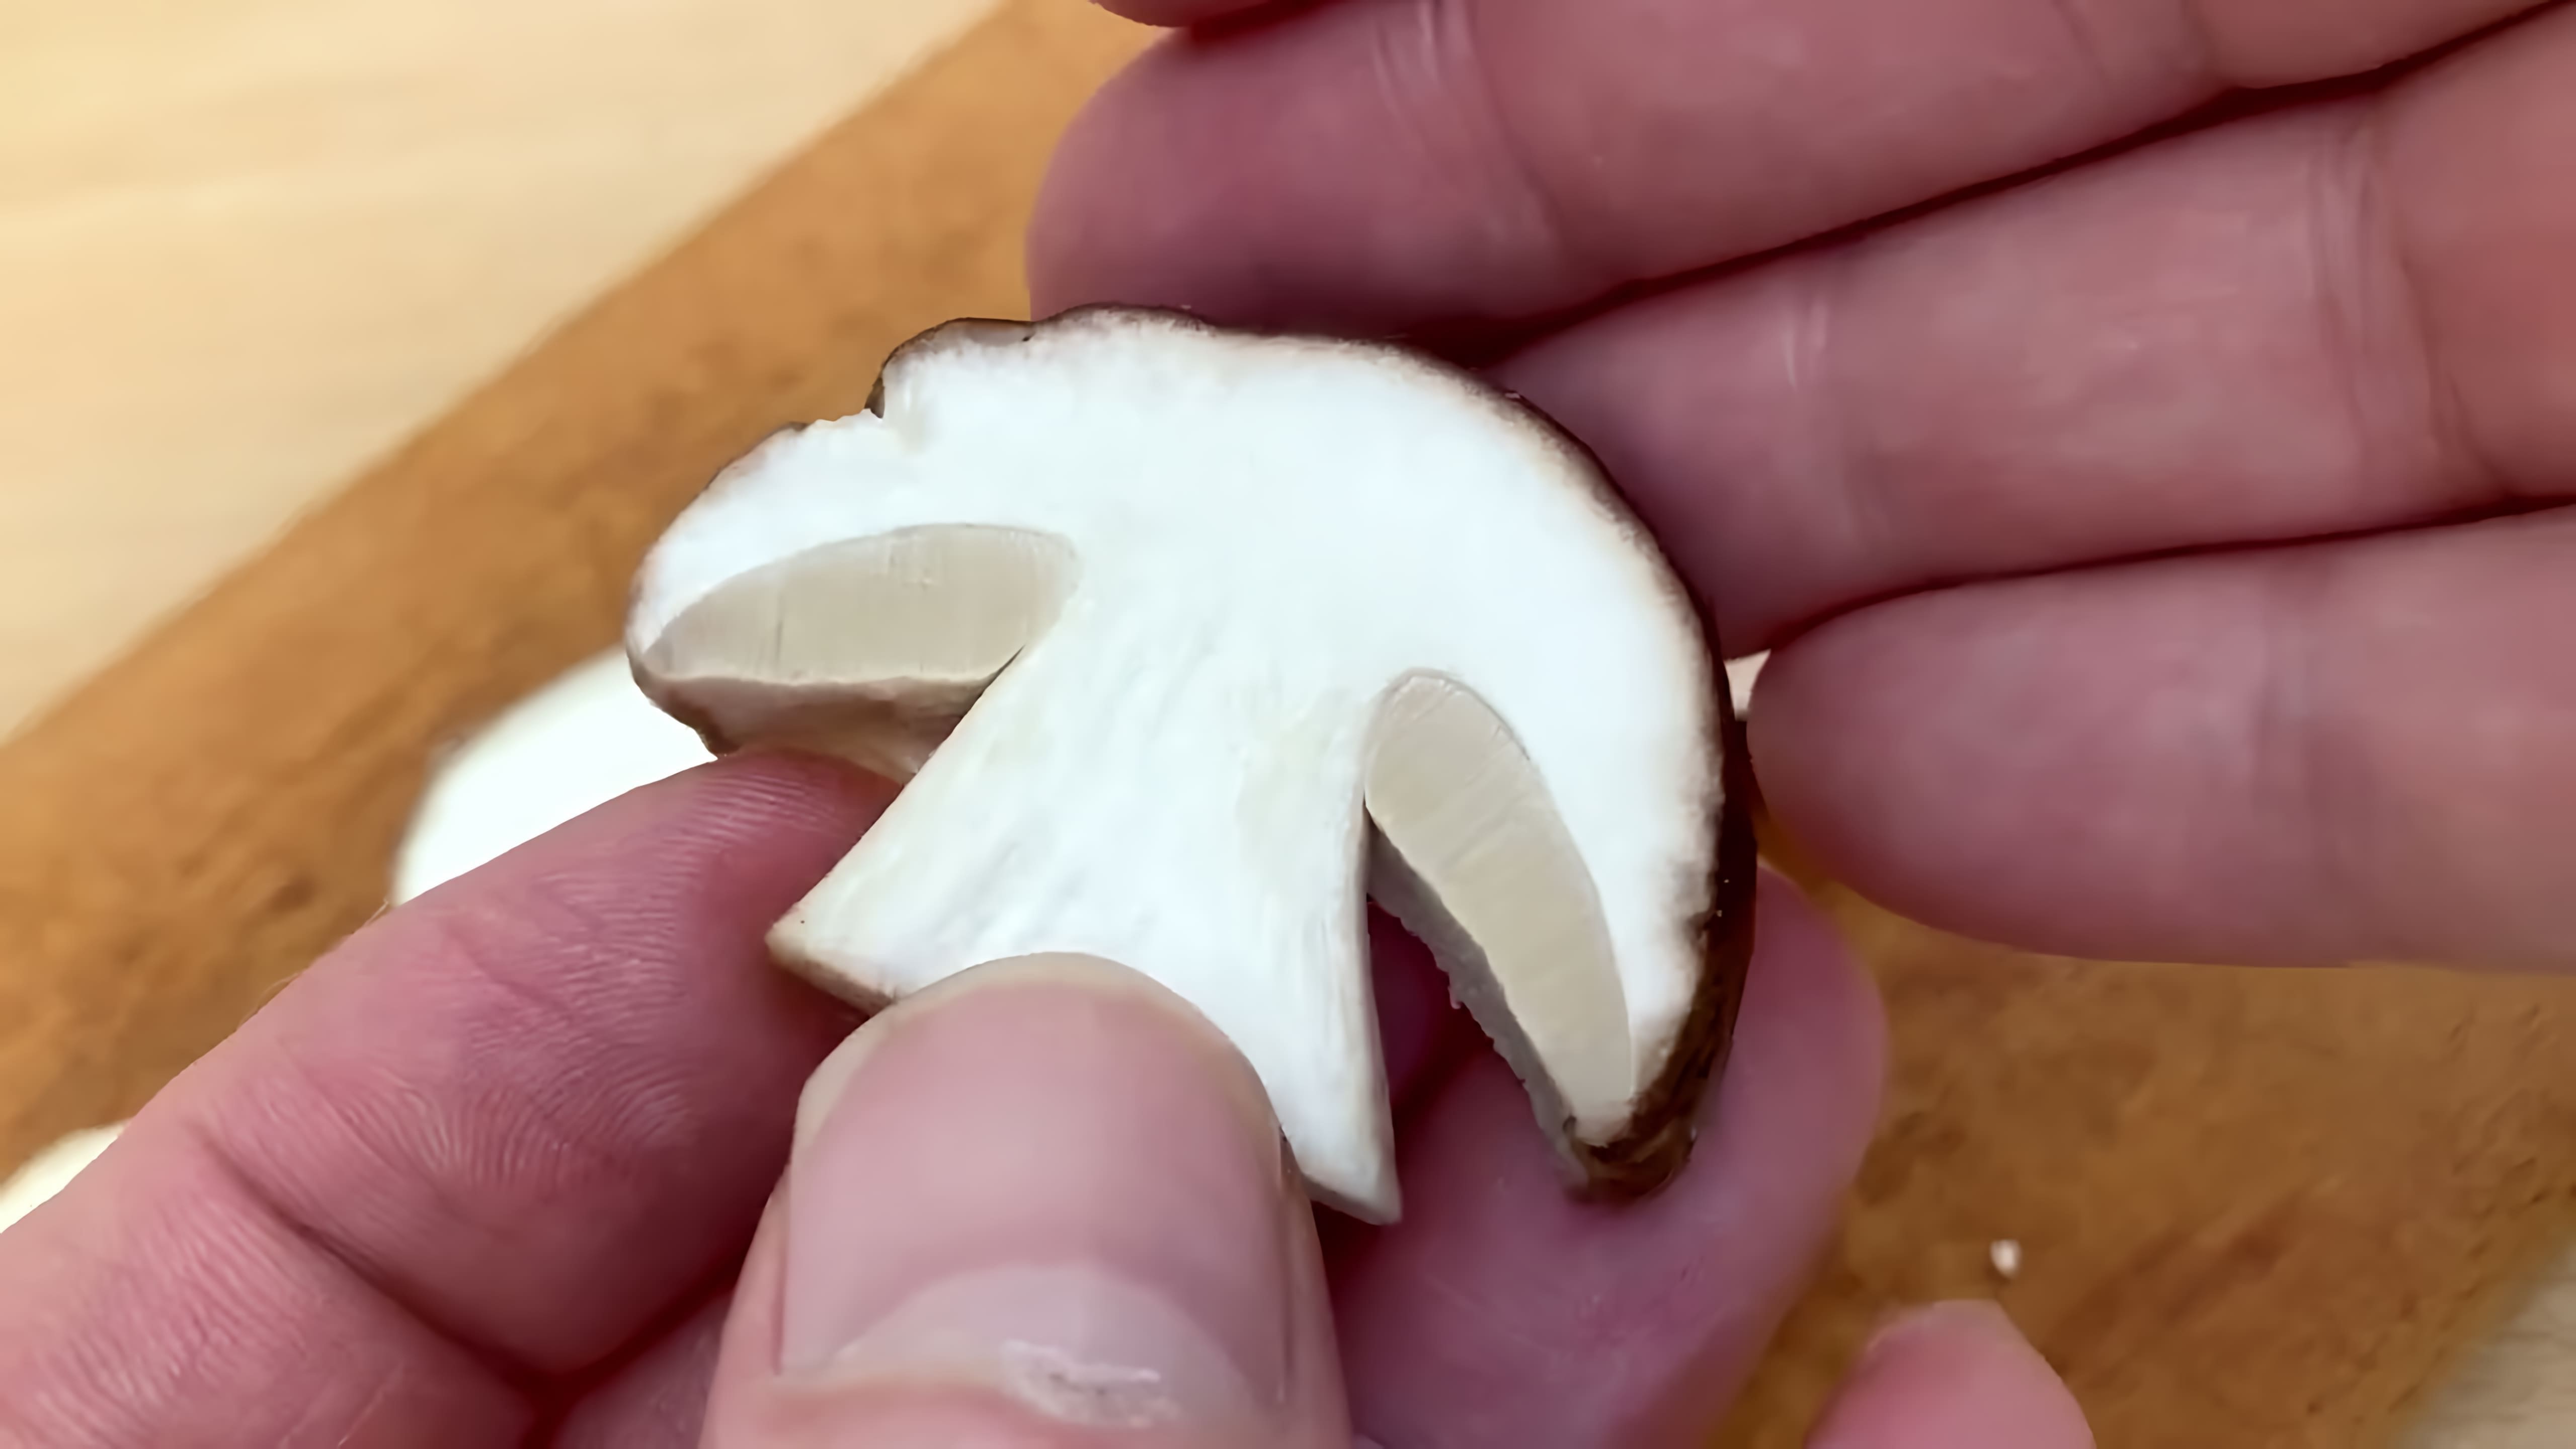 В данном видео демонстрируется процесс приготовления белых грибов